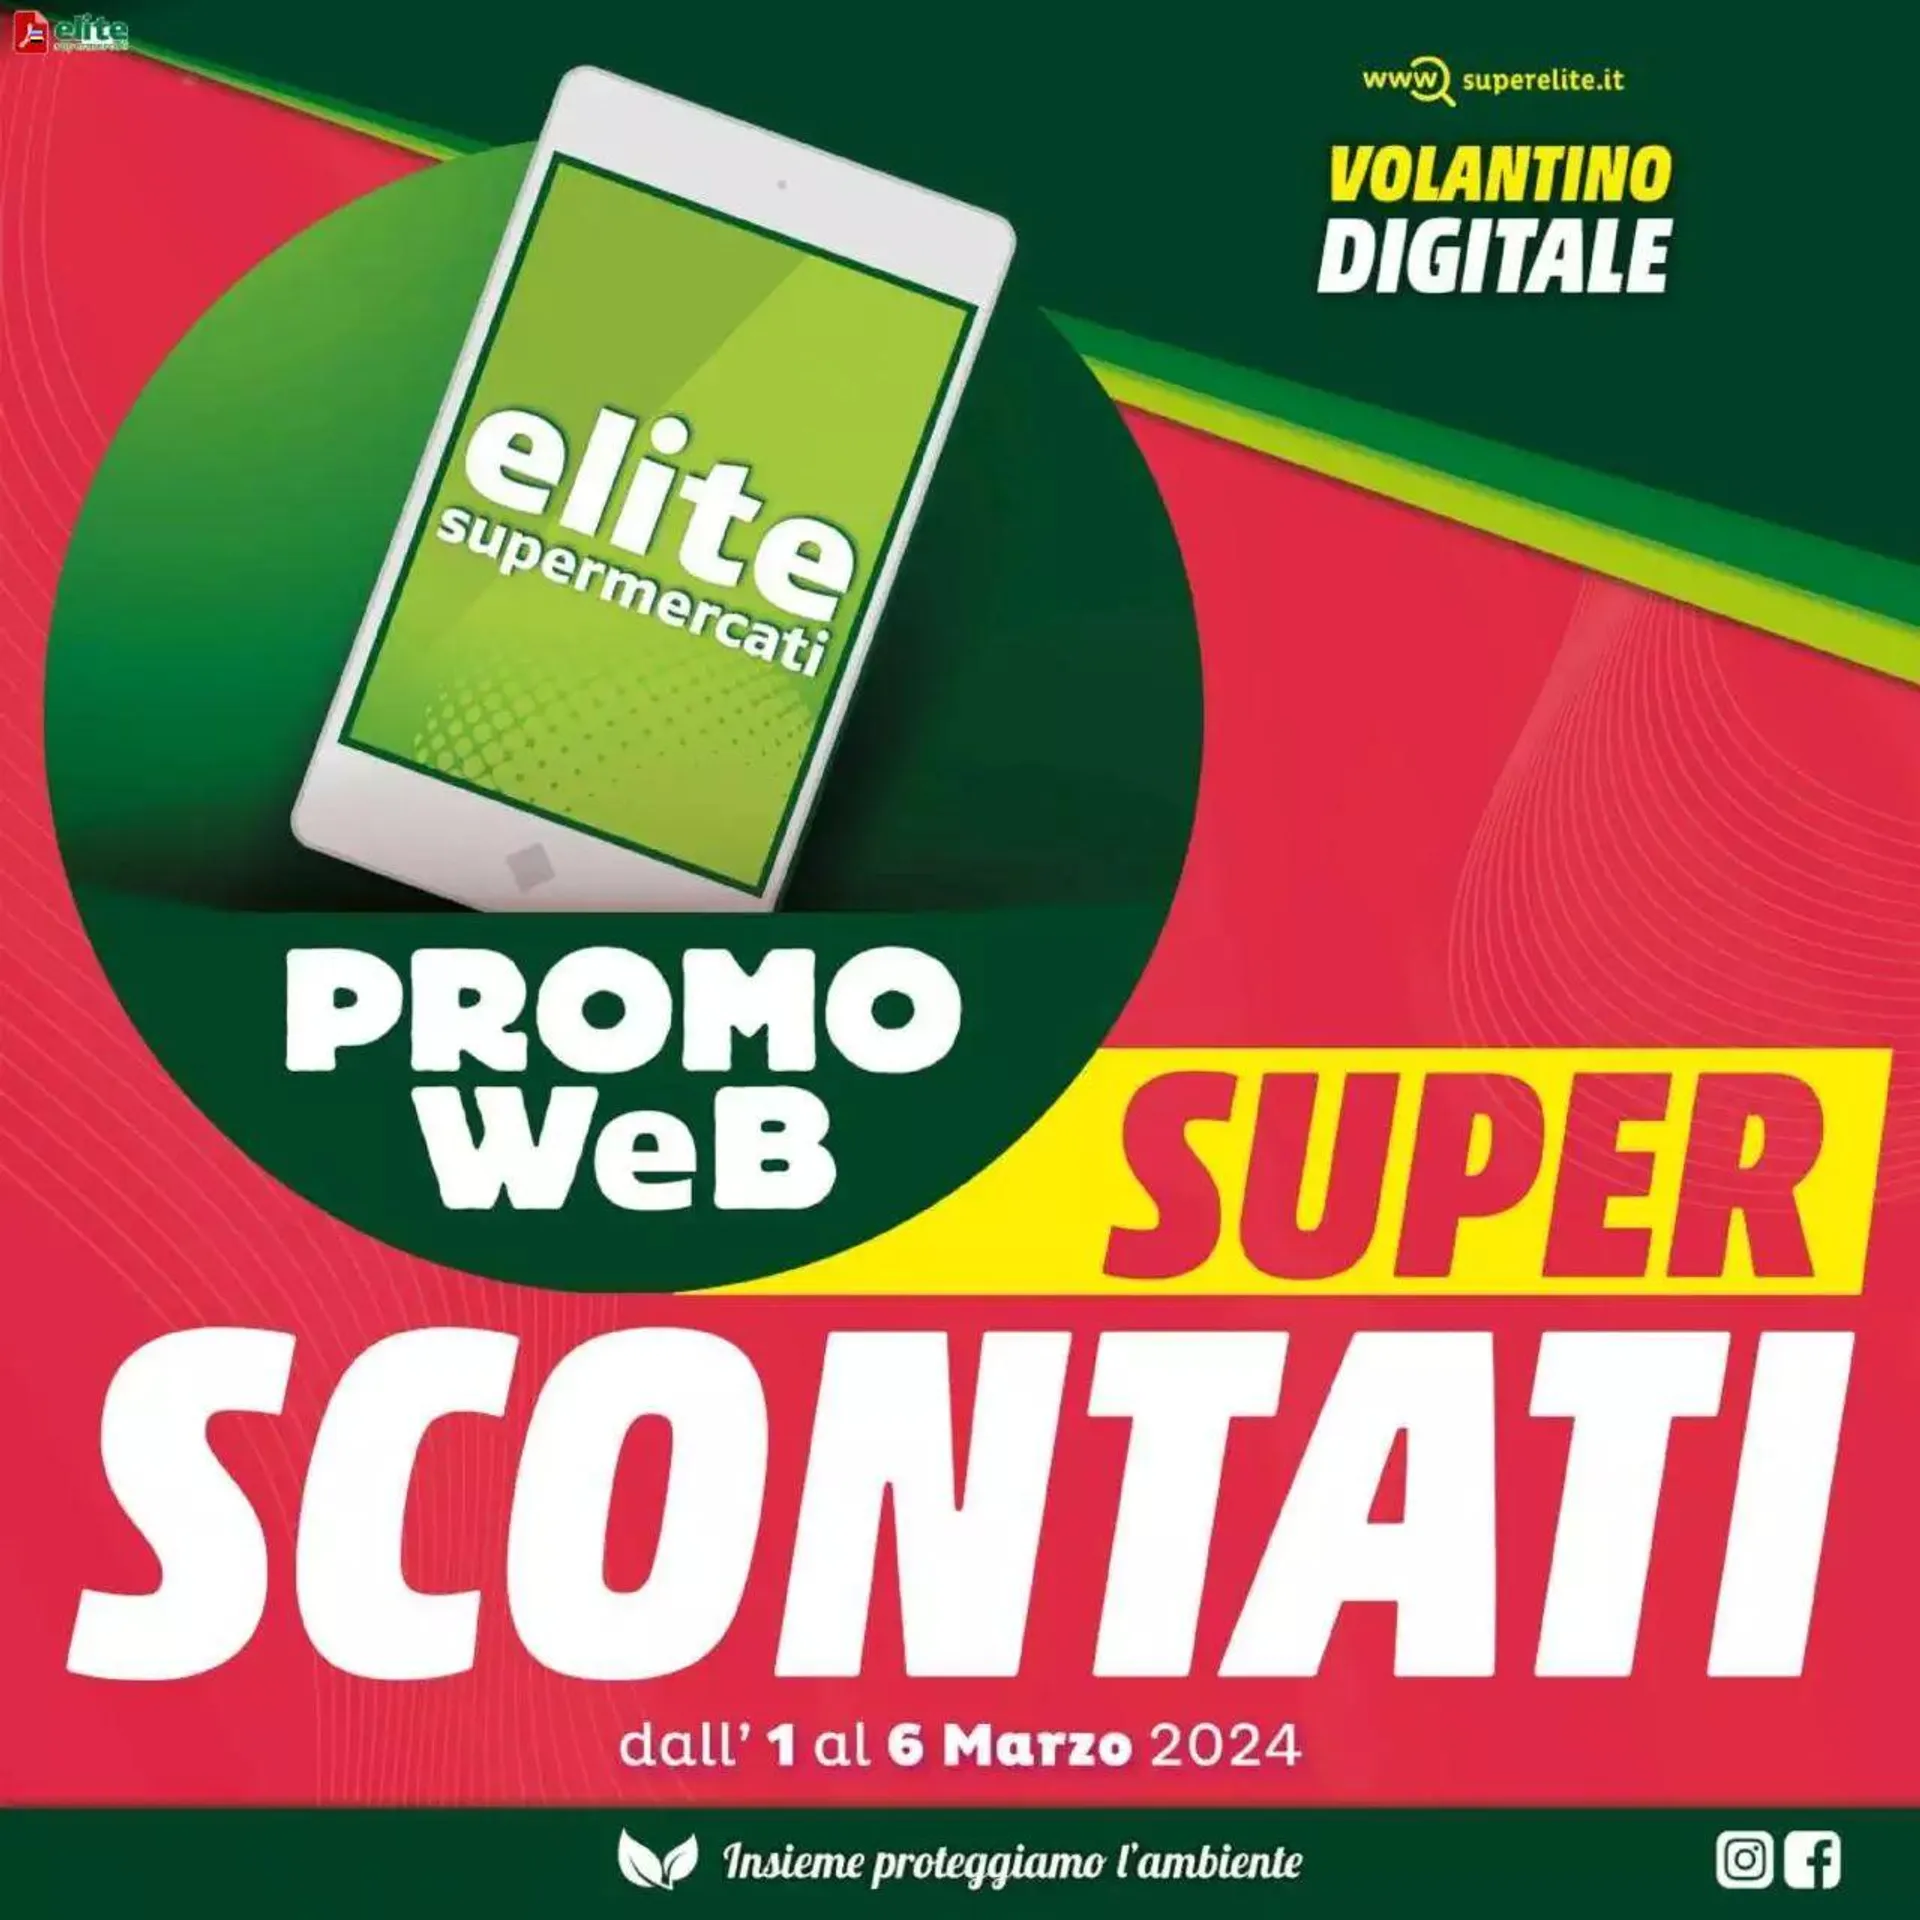 Elite Supermercati - Super Scontati da 1 marzo a 6 marzo di 2024 - Pagina del volantino 